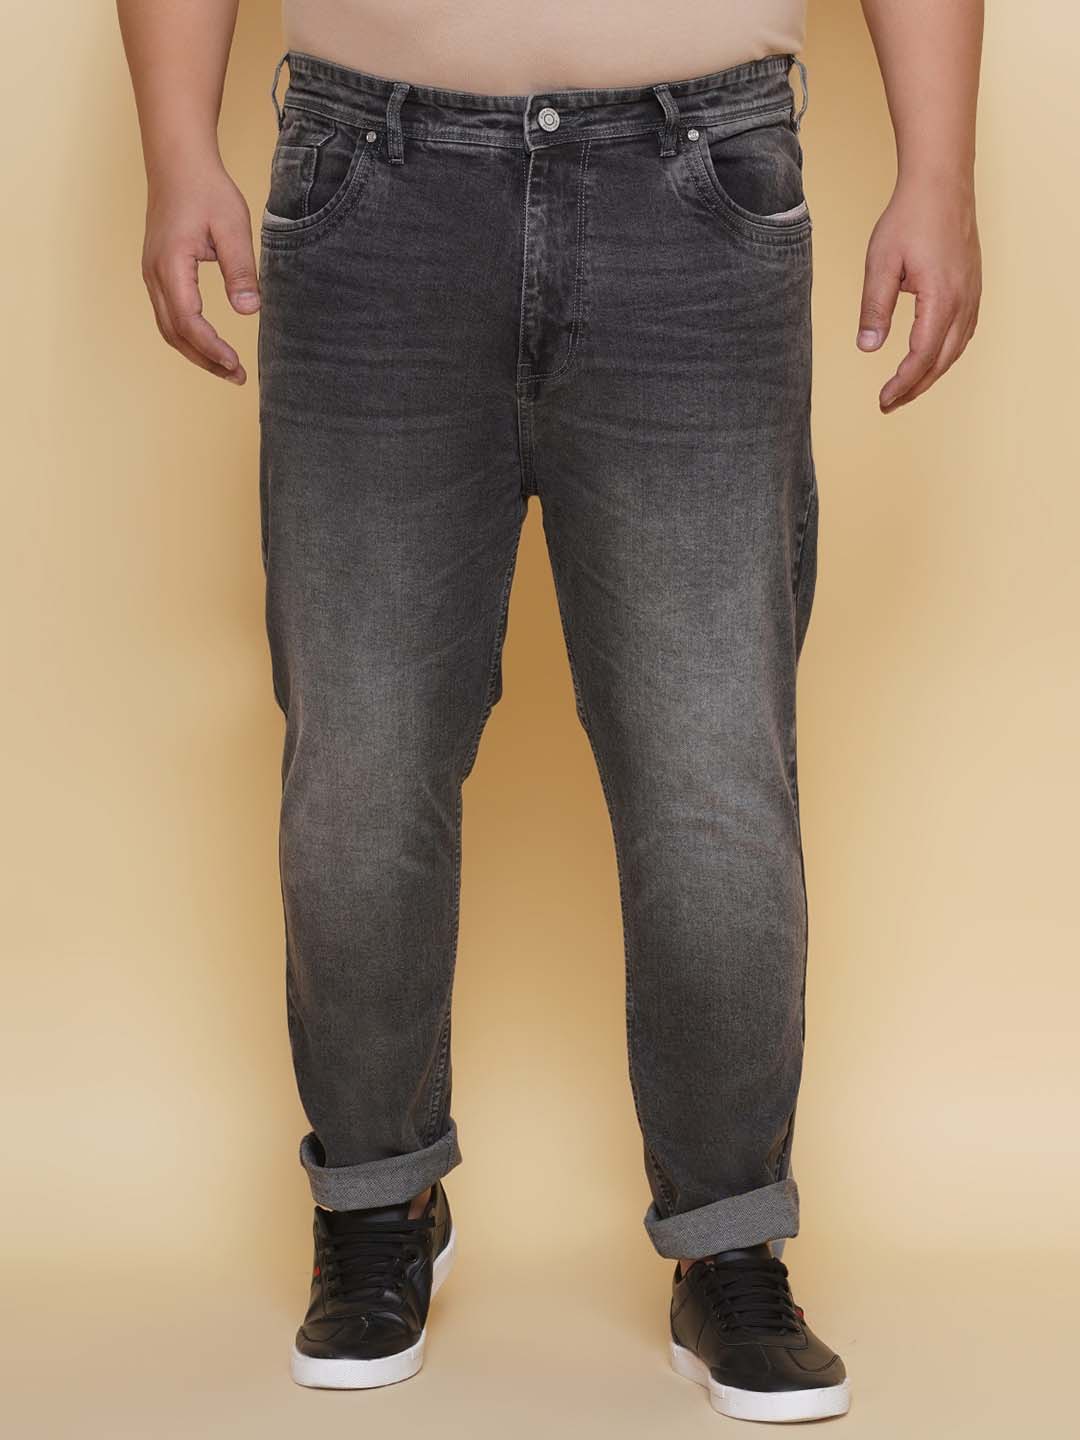 bottomwear/jeans/EJPJ25136/ejpj25136-1.jpg